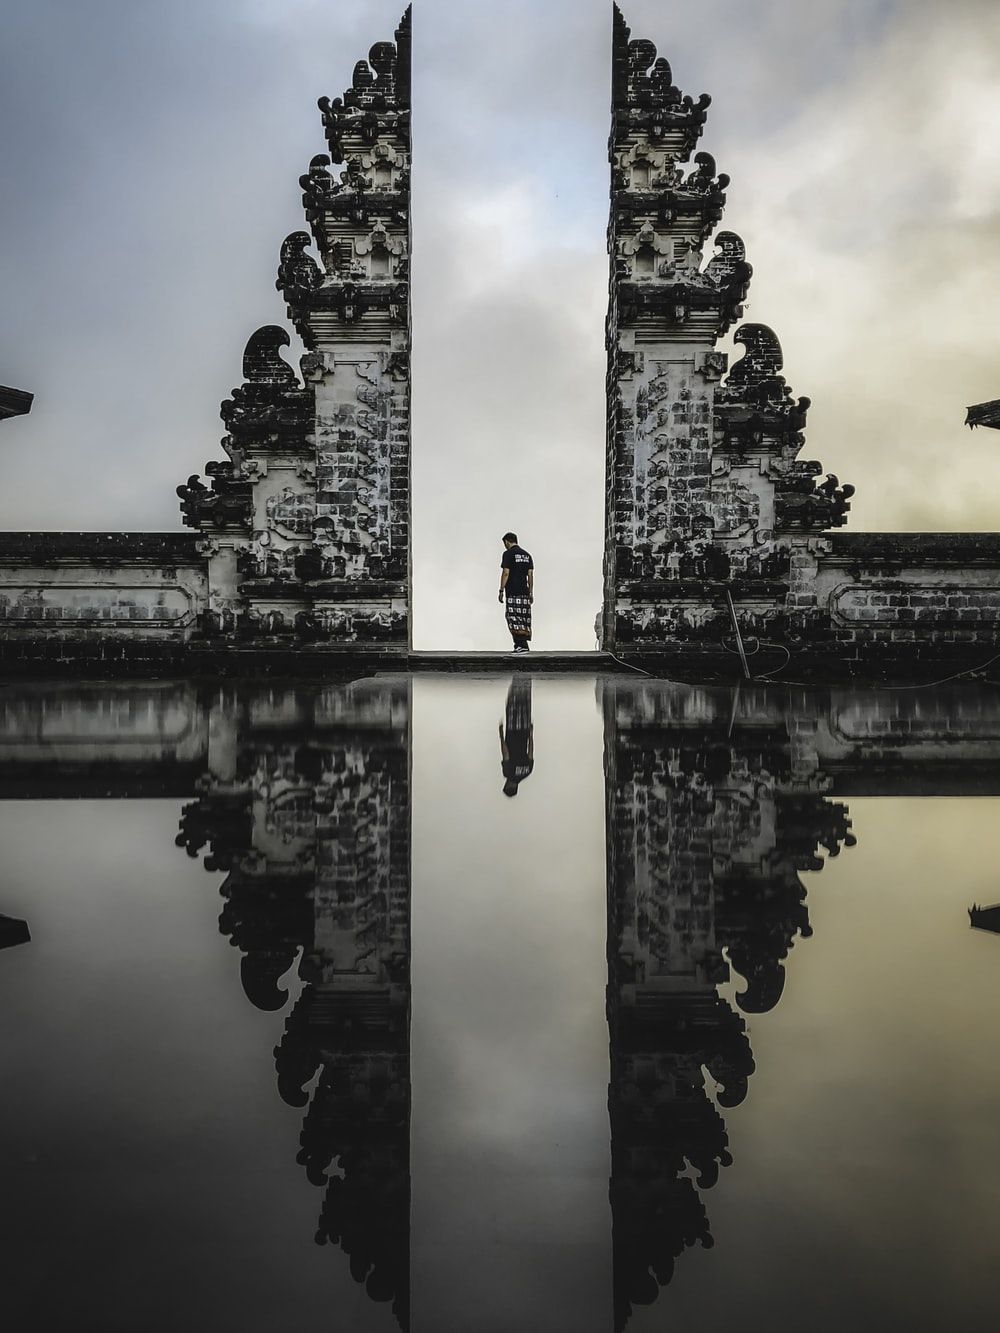 قاب هنری جالب از مرد ایستاده در معبد پورا بساکی بالی